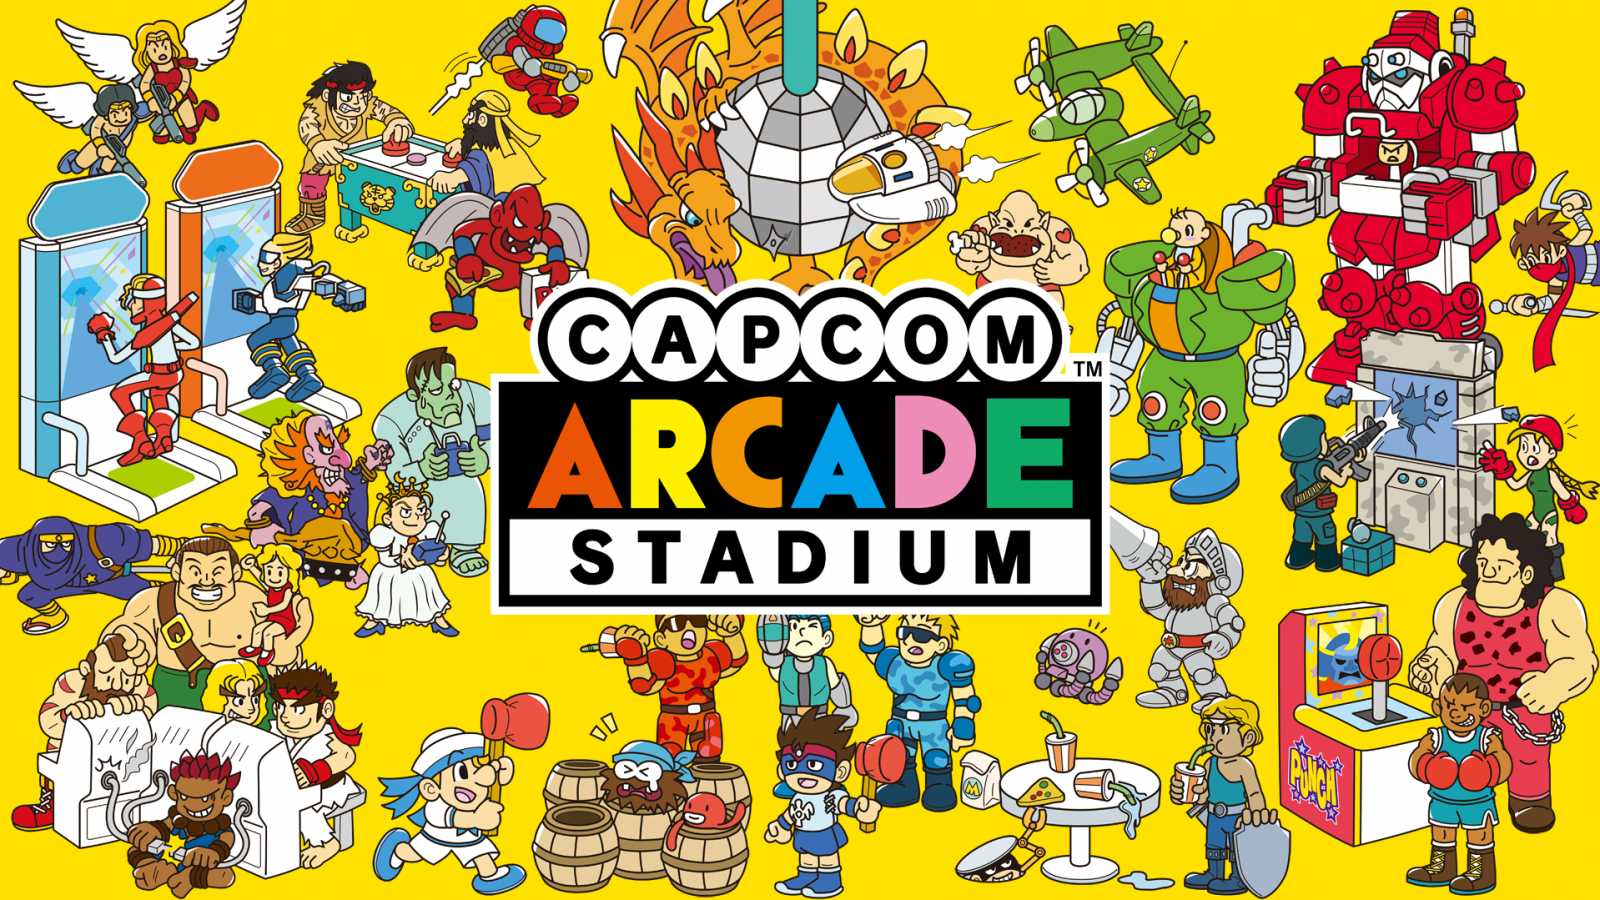 Capcom Arcade Stadium dorazí na PC a další konzole. Připraveny jsou nové hry i funkce